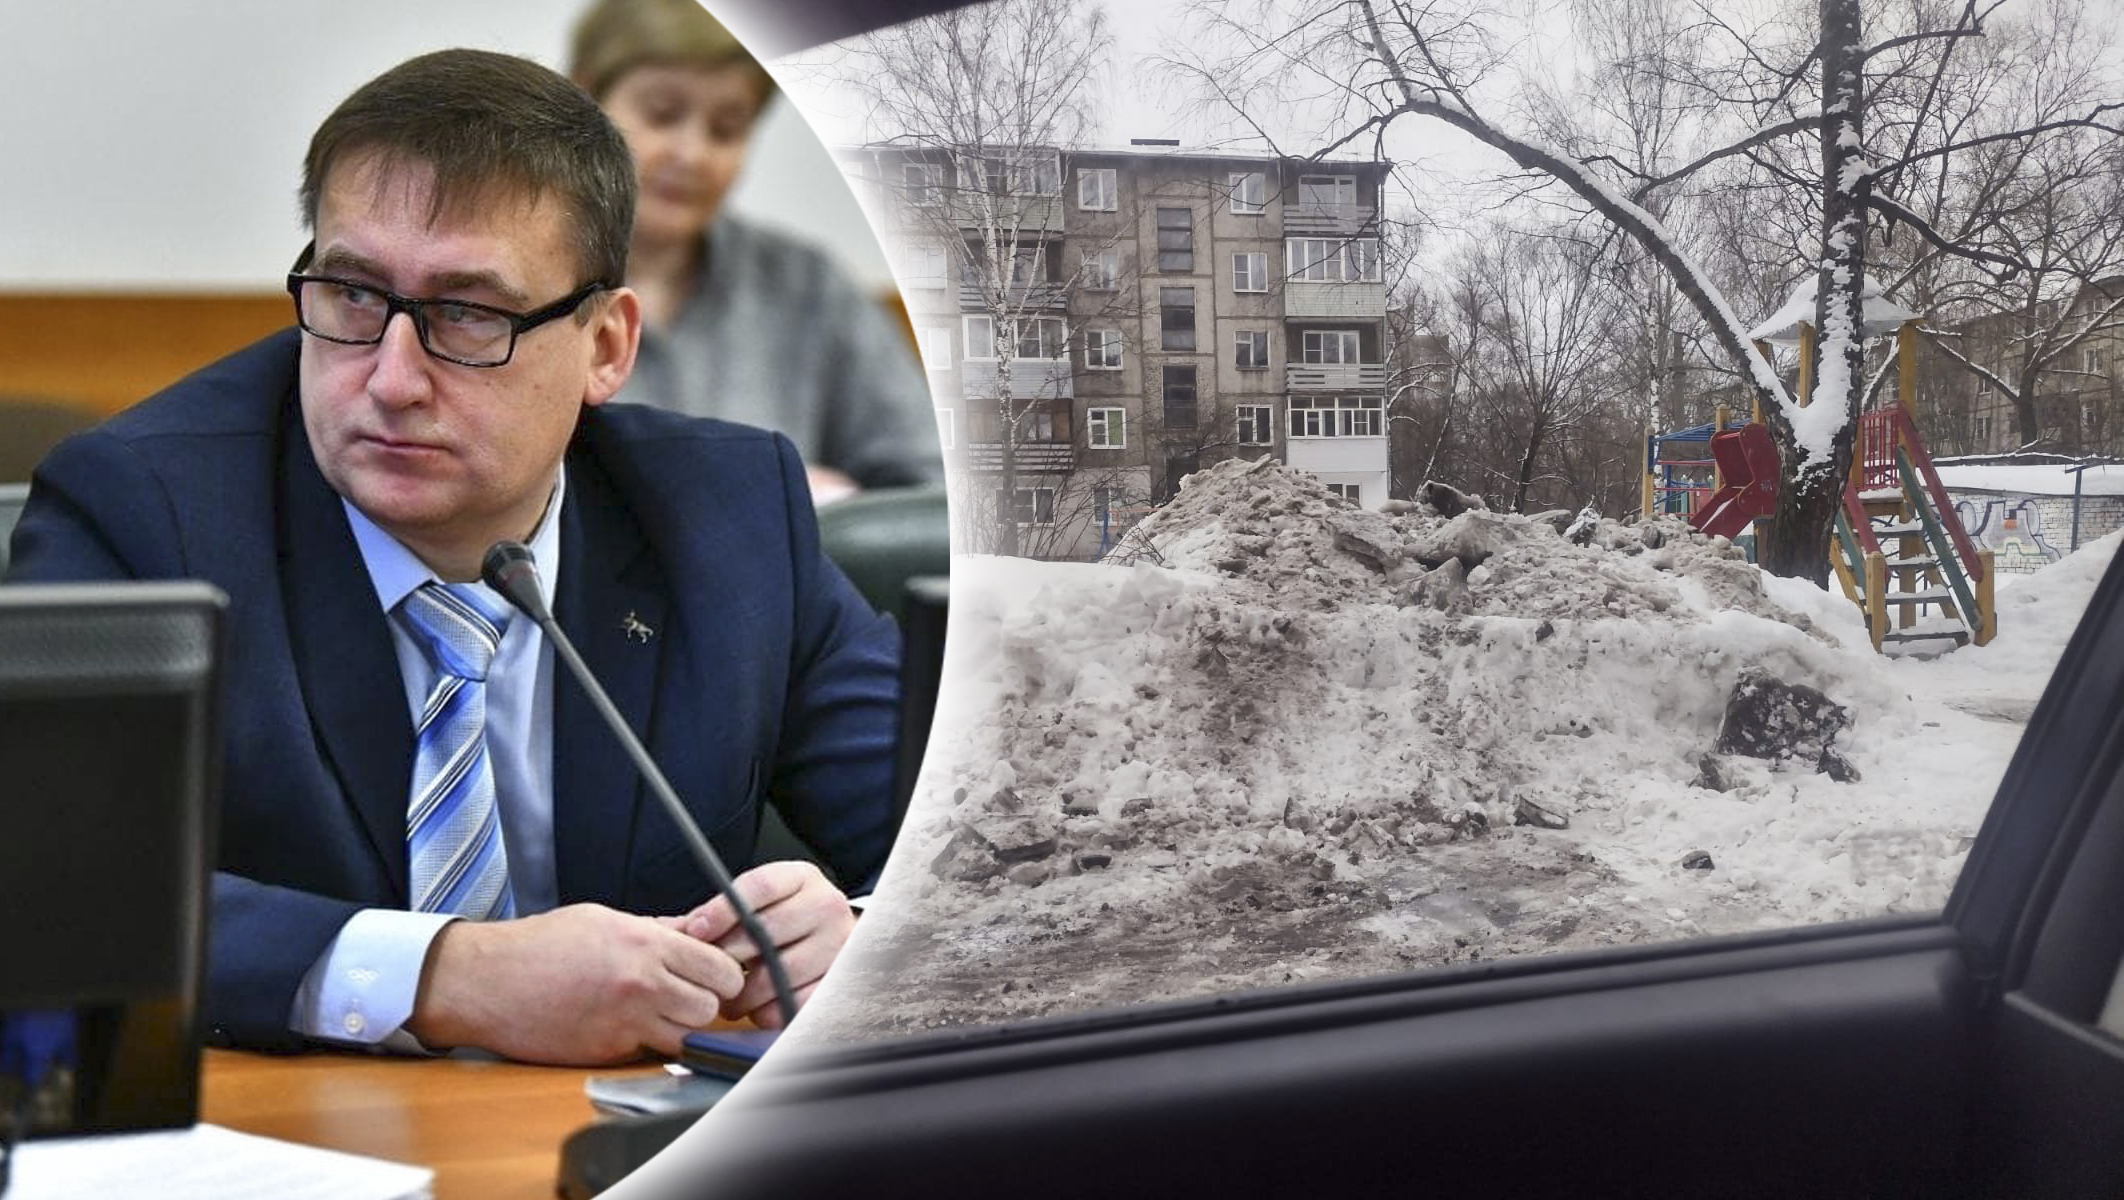 "Других мест нет": чиновники заваливают дворы в центре Ярославля грязным снегом